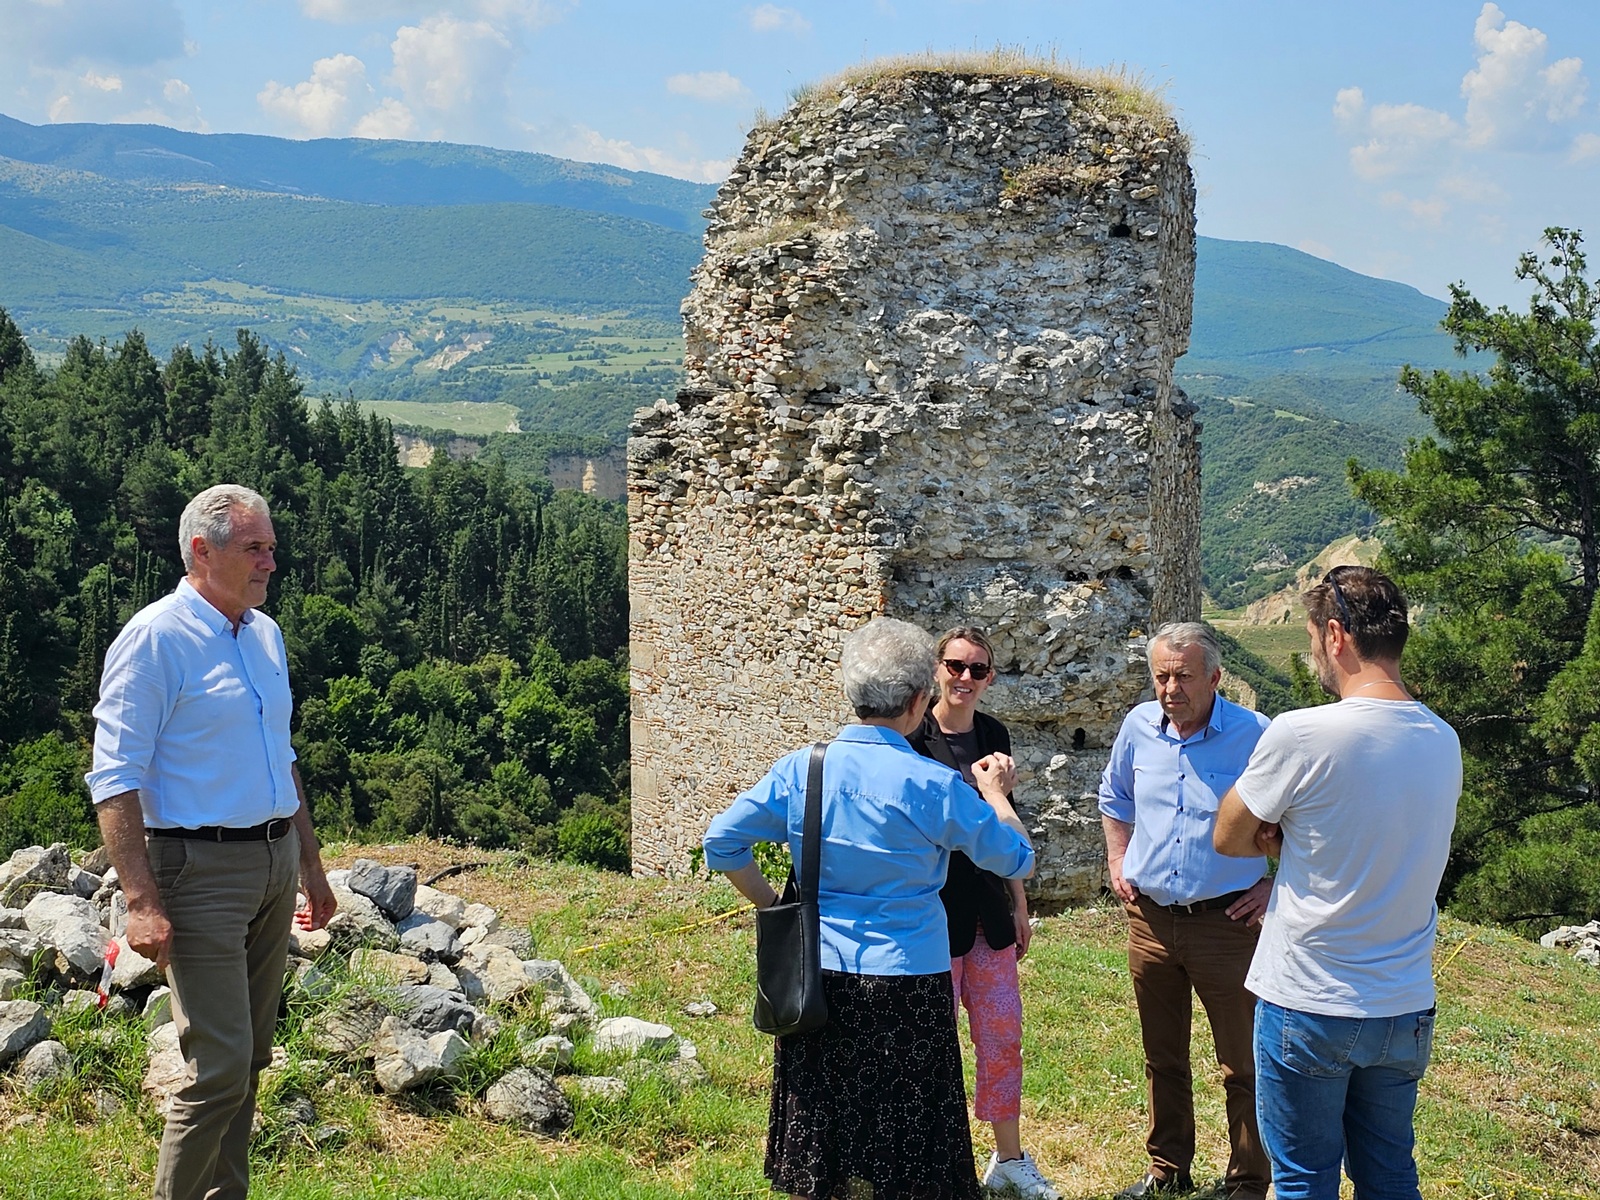 Έργα στο Δήμο Σερβίων που υλοποιούνται από το Επιχειρησιακό Πρόγραμμα Δυτικής Μακεδονίας 2014-2020 επισκέφθηκαν οι Αντιπεριφερειάρχες Μ. Μακρυγιάννης και Γ. Βαβλιάρας